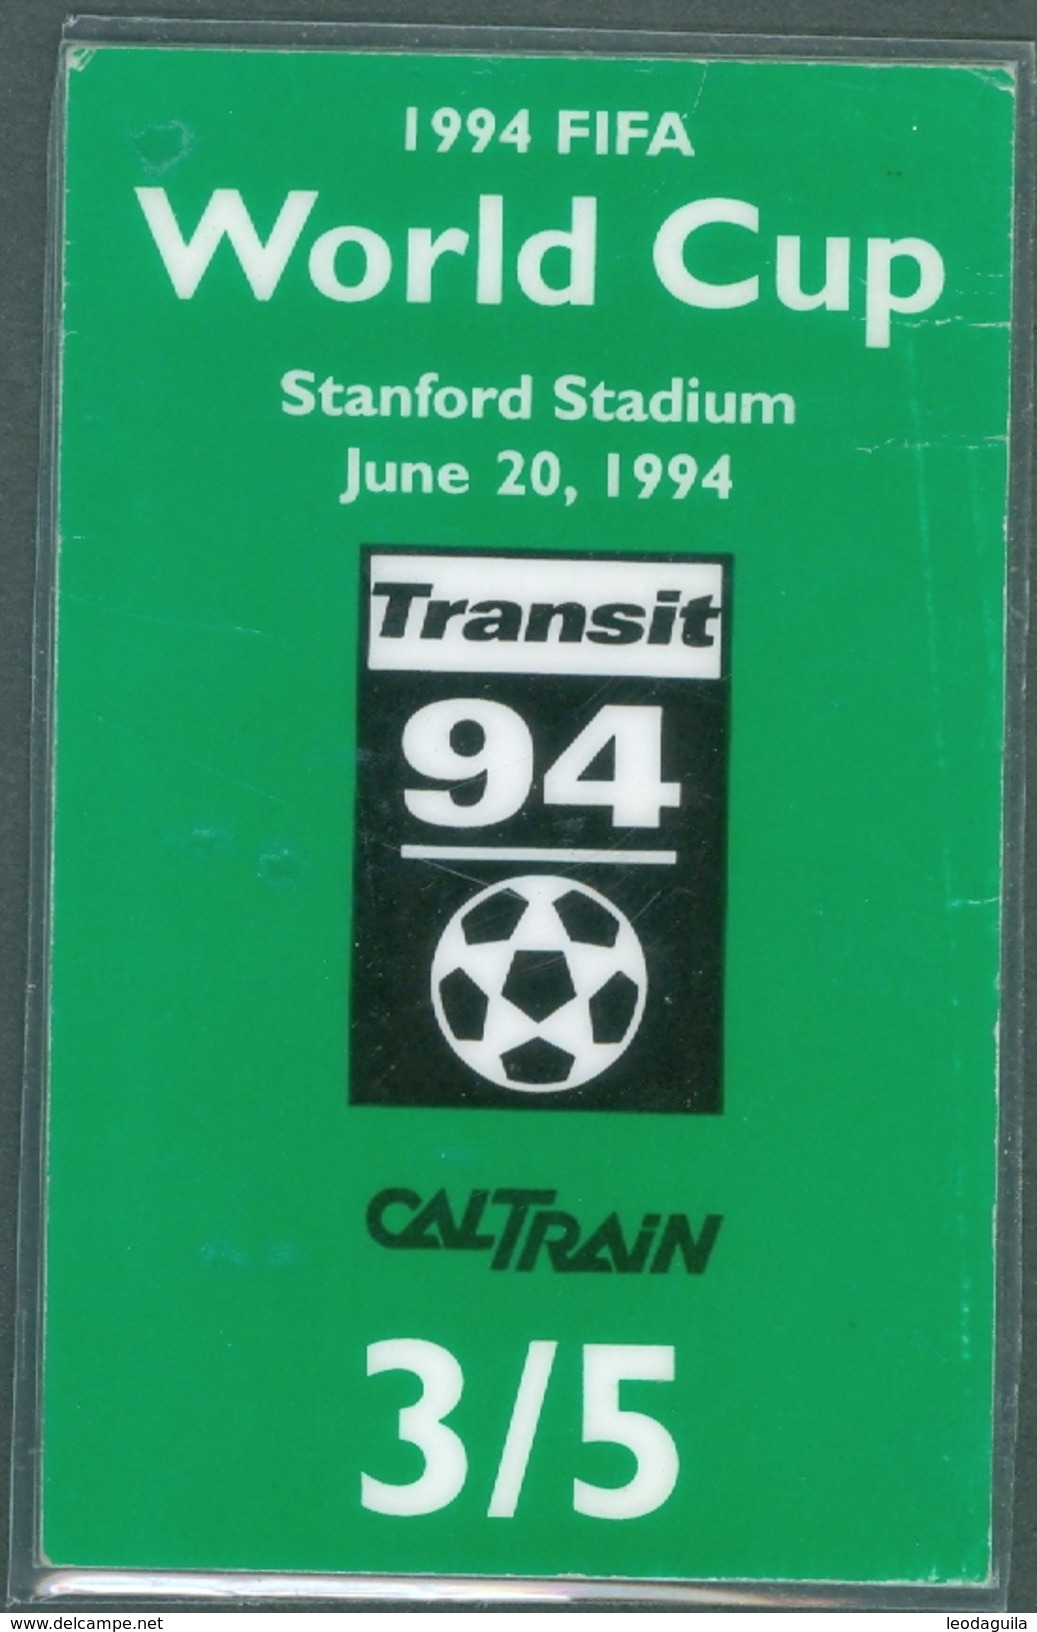 RAILWAY TICKET  -   CALTRAIN TICKET TO STANFORD STADIUM - USA  - FIFA WORLD CUP 1994 - Mondo